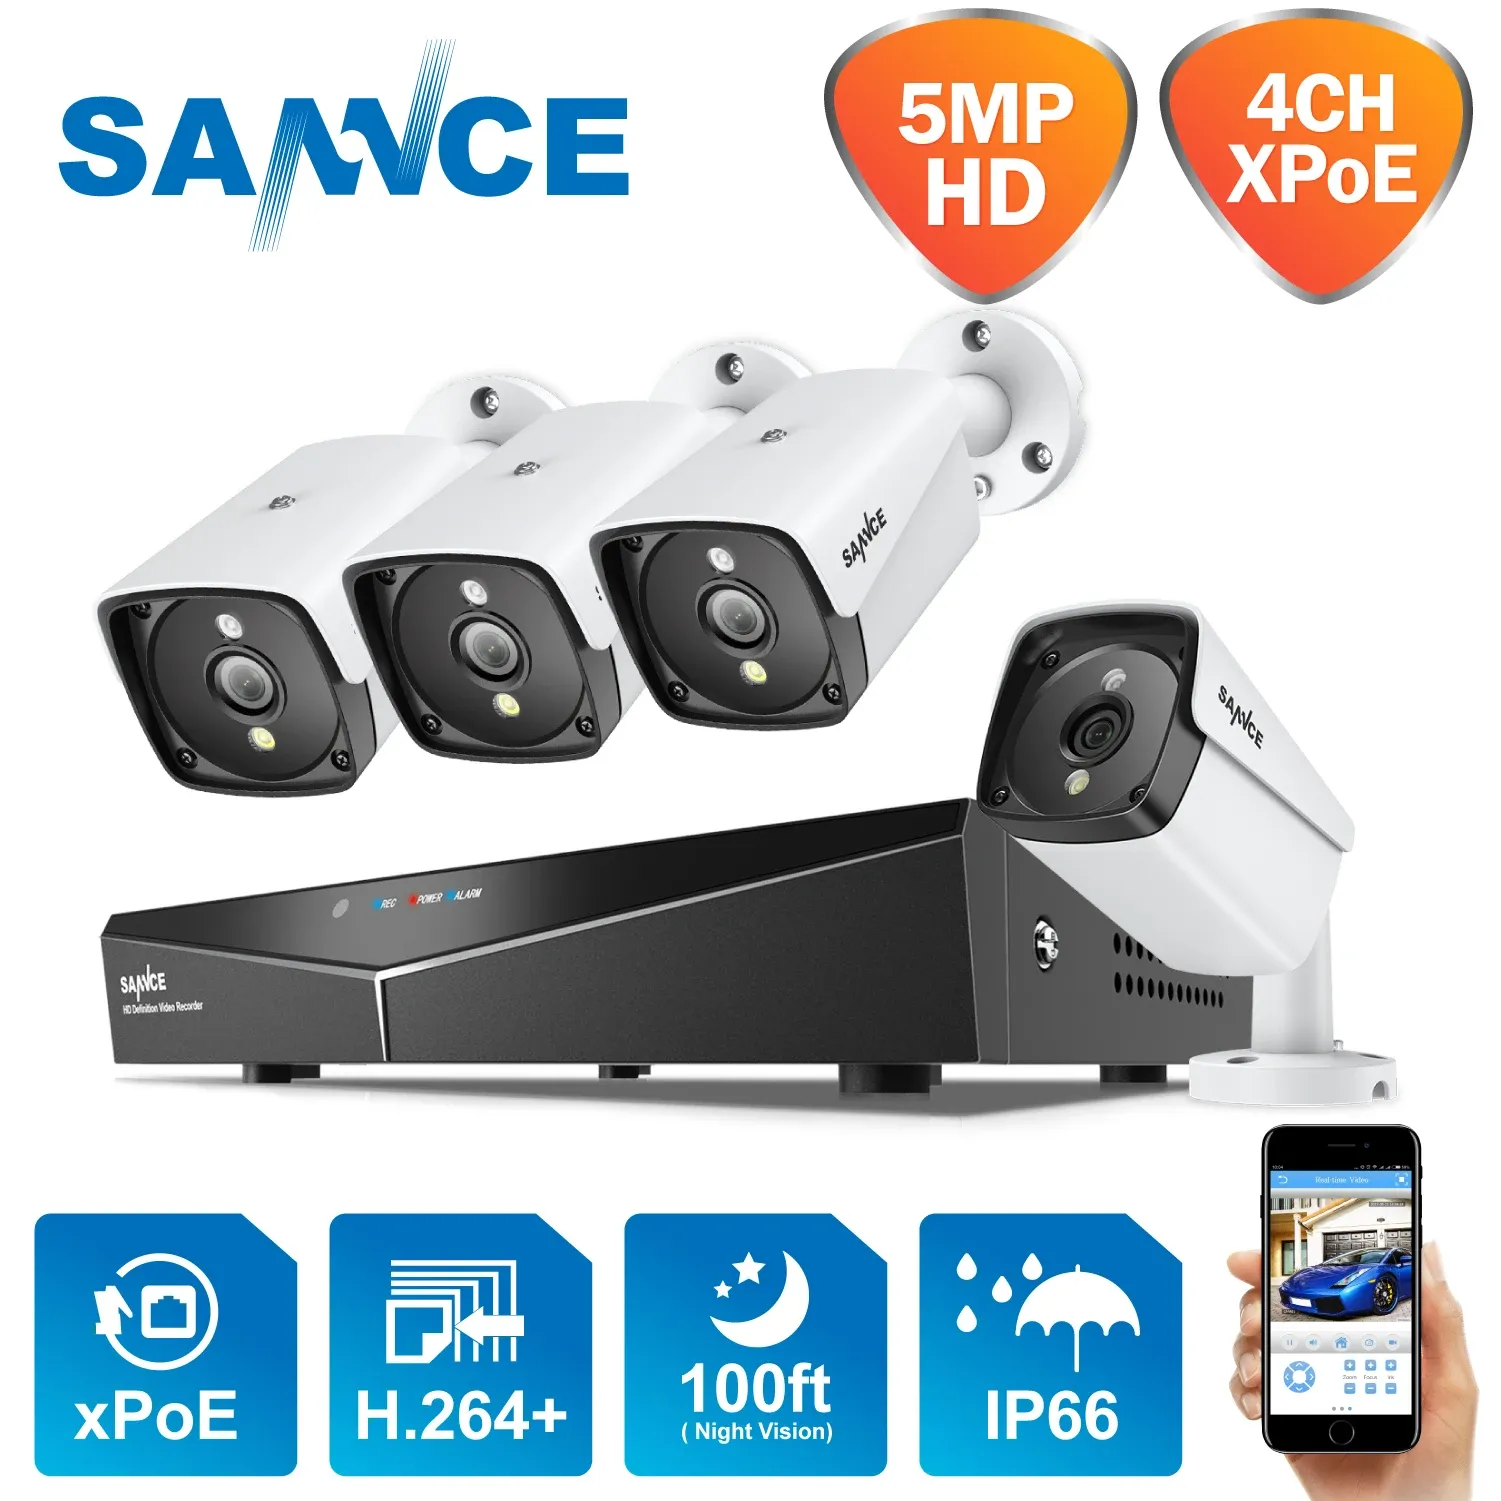 Système Sance 4CH 5MP XPOE HD VIDEO VIDEO SUMPROYANCE SYSTÈME H.264 + NVR avec des appareils photo IP 4x 5MP